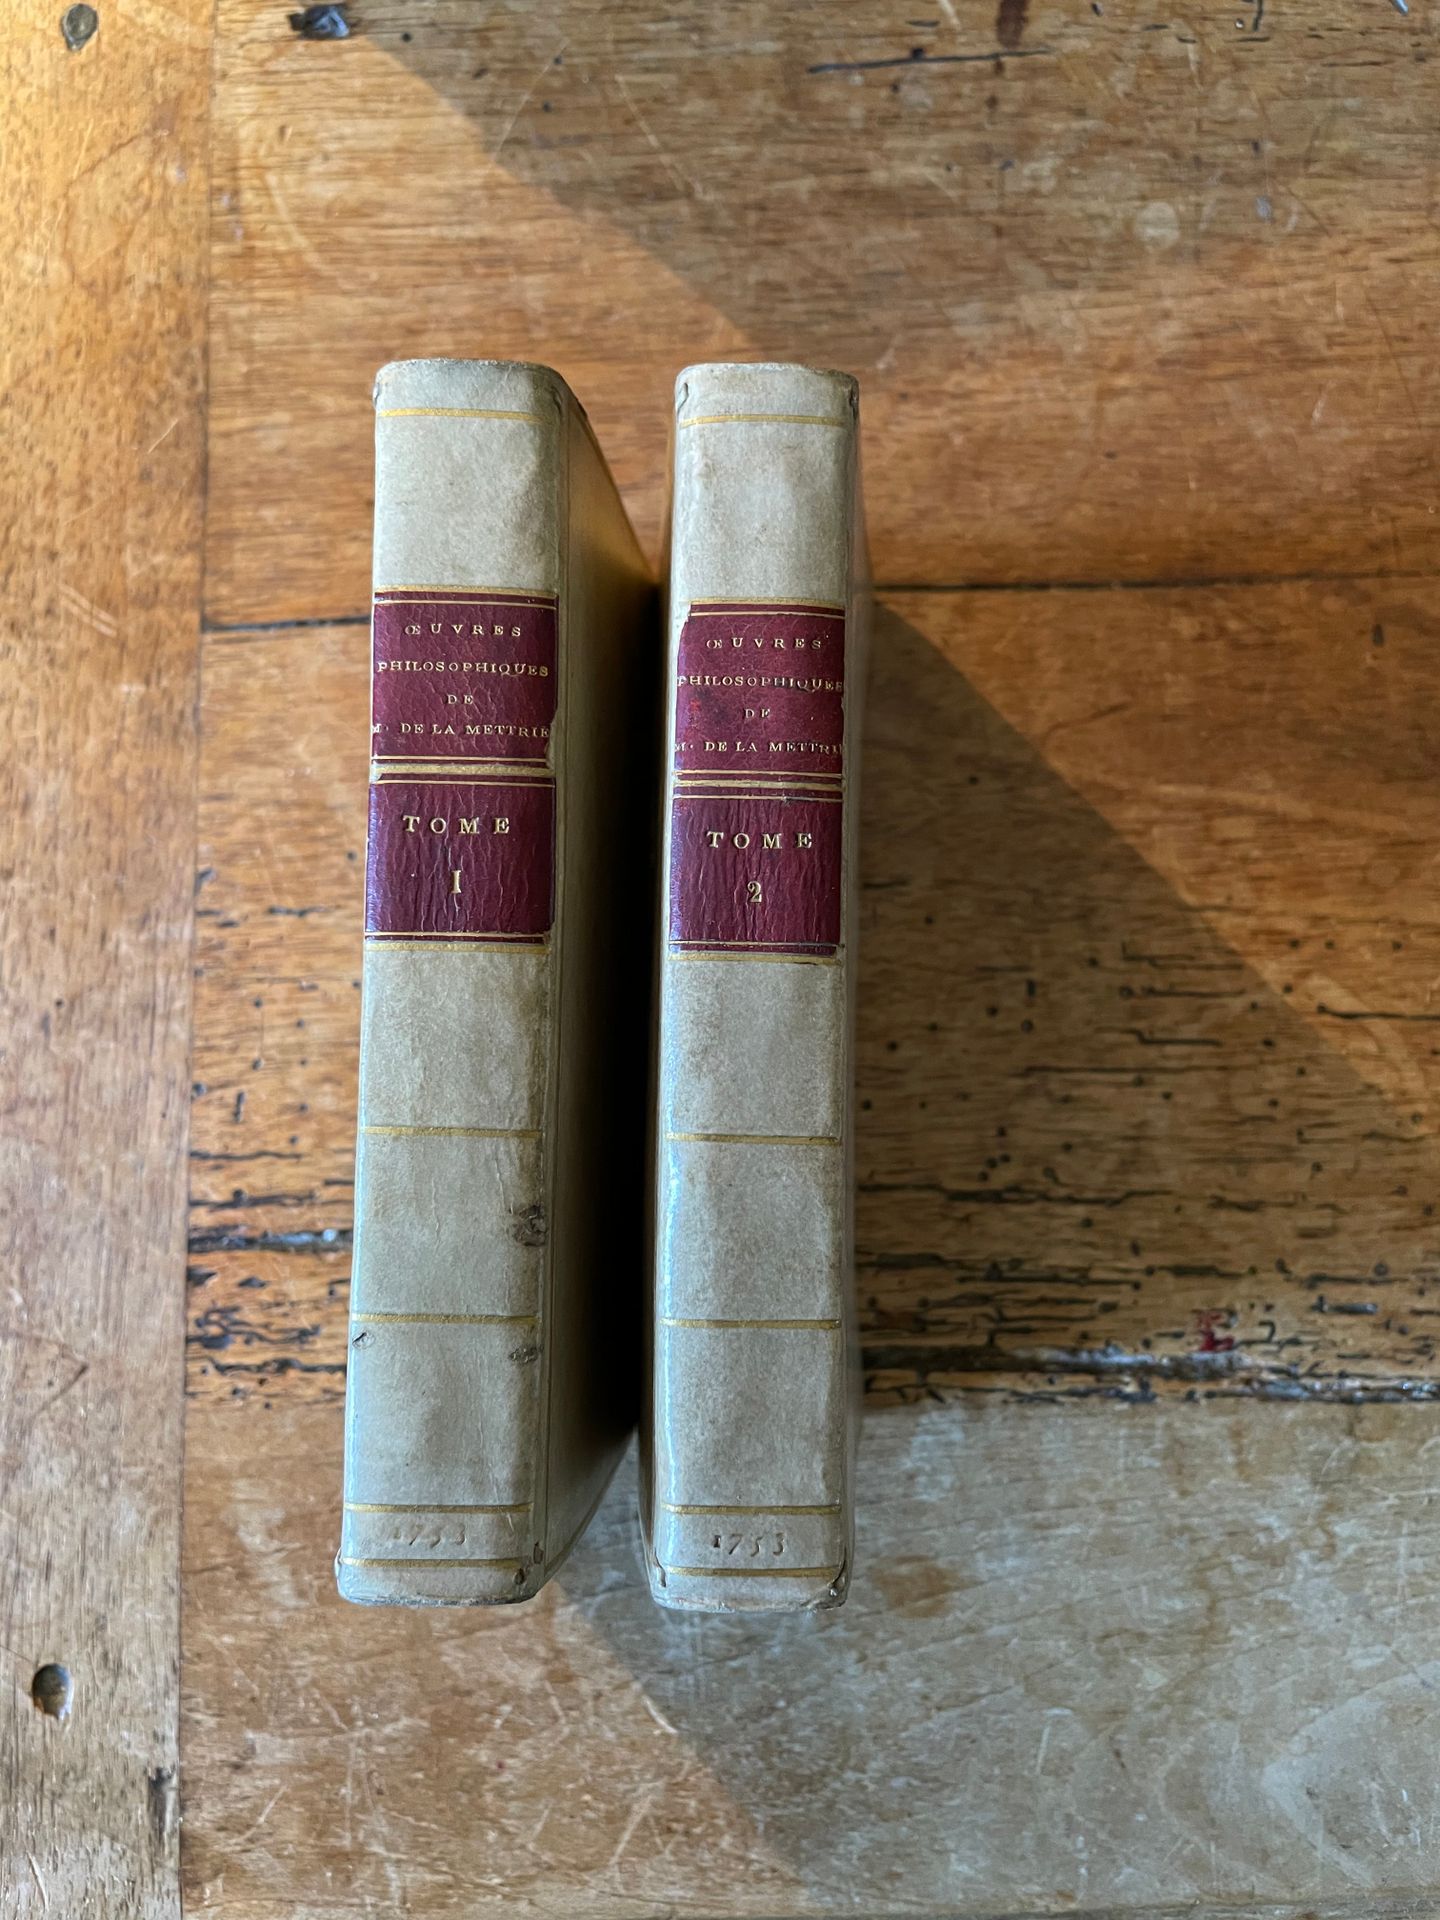 Null LA METTRIE. Obras filosóficas. Amsterdam, 1753, 2 volúmenes in-12 encuadern&hellip;